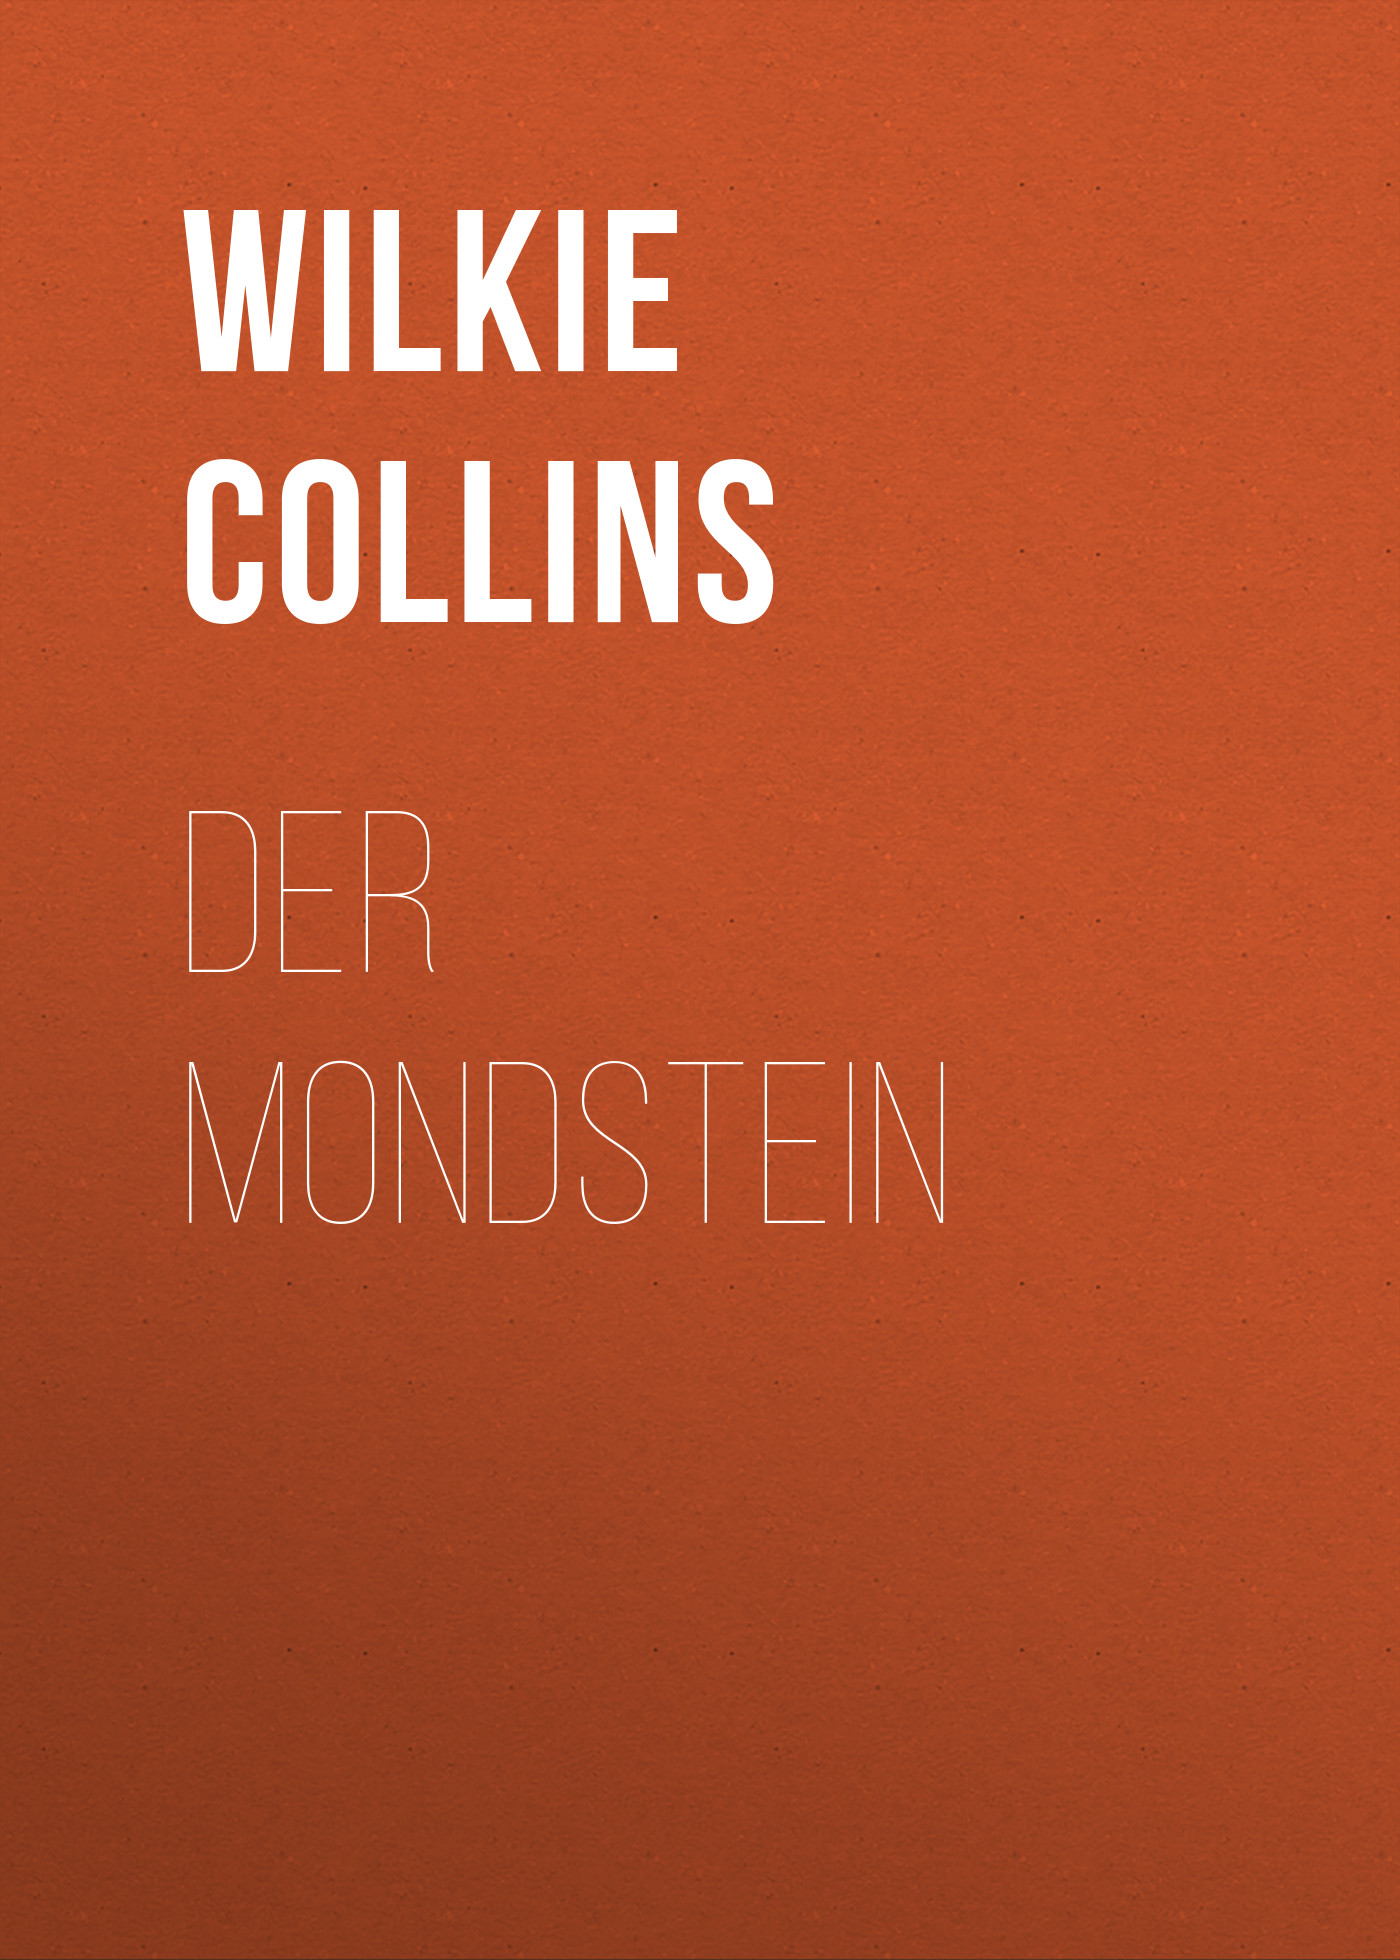 Книга Der Mondstein из серии , созданная Wilkie Collins, может относится к жанру Зарубежная классика. Стоимость электронной книги Der Mondstein с идентификатором 48634324 составляет 0 руб.